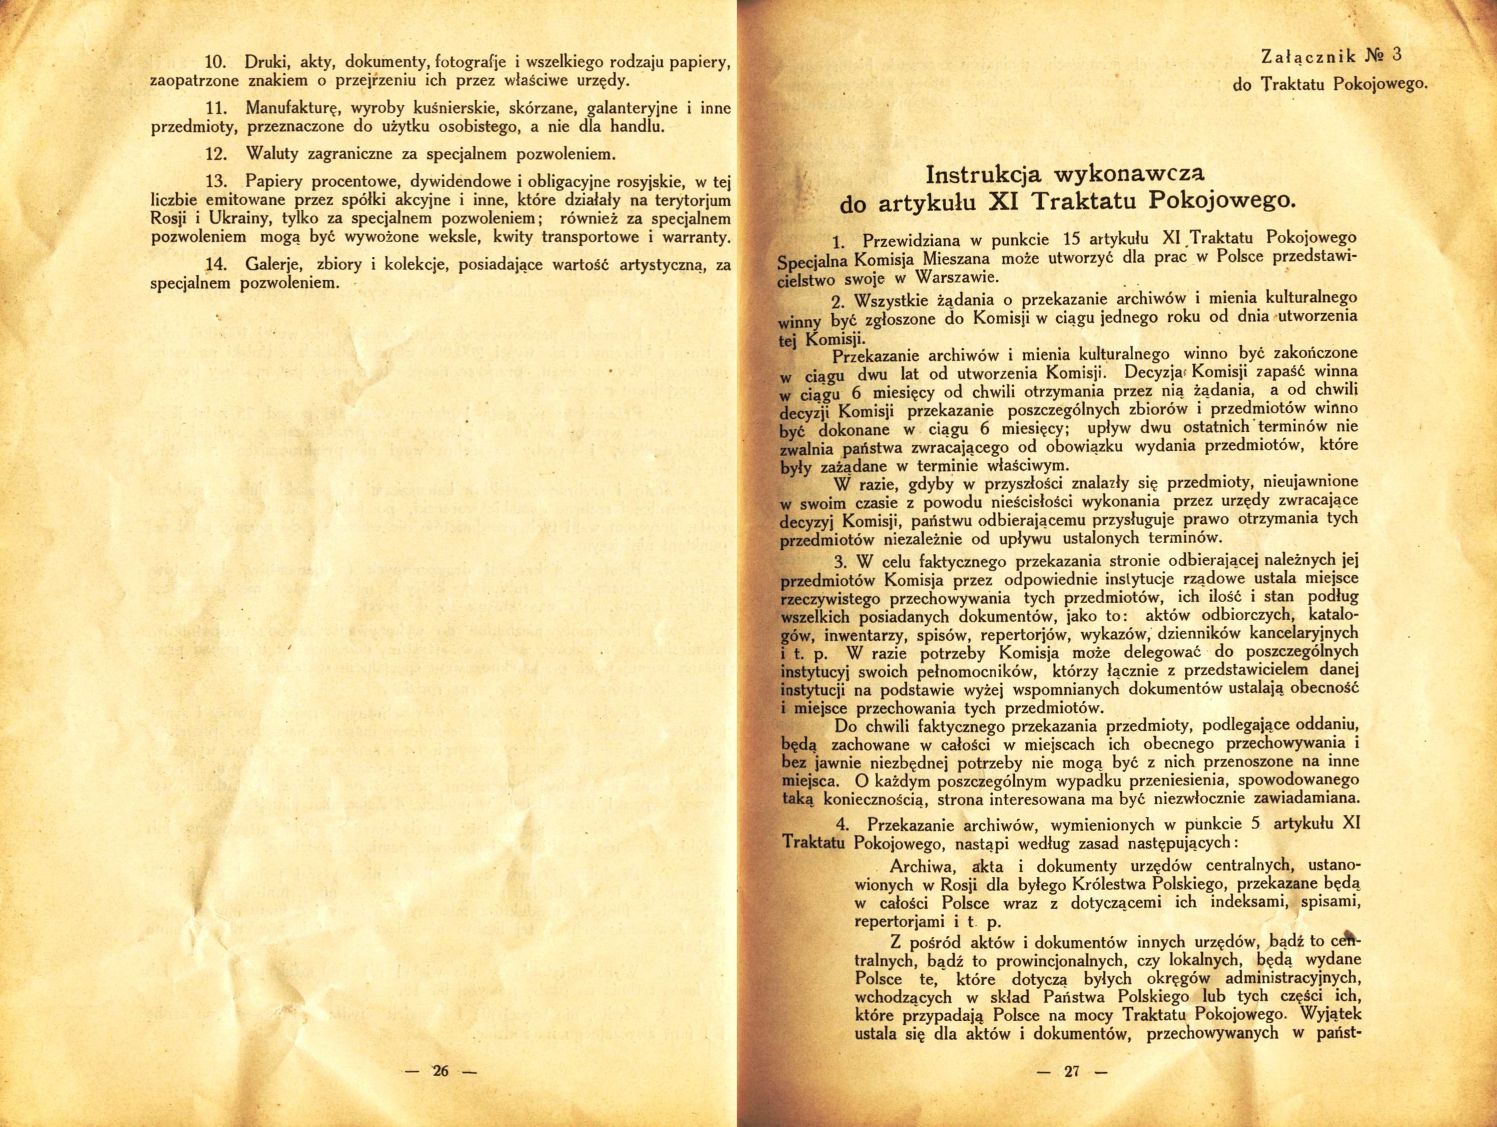 Traktat Pokoju między Polską a Rosją i Ukrainą podpisany w Rydze dnia 18 marca 1921 roku, s. 26-27, Akta Jana Dąbskiego, sygn. 5